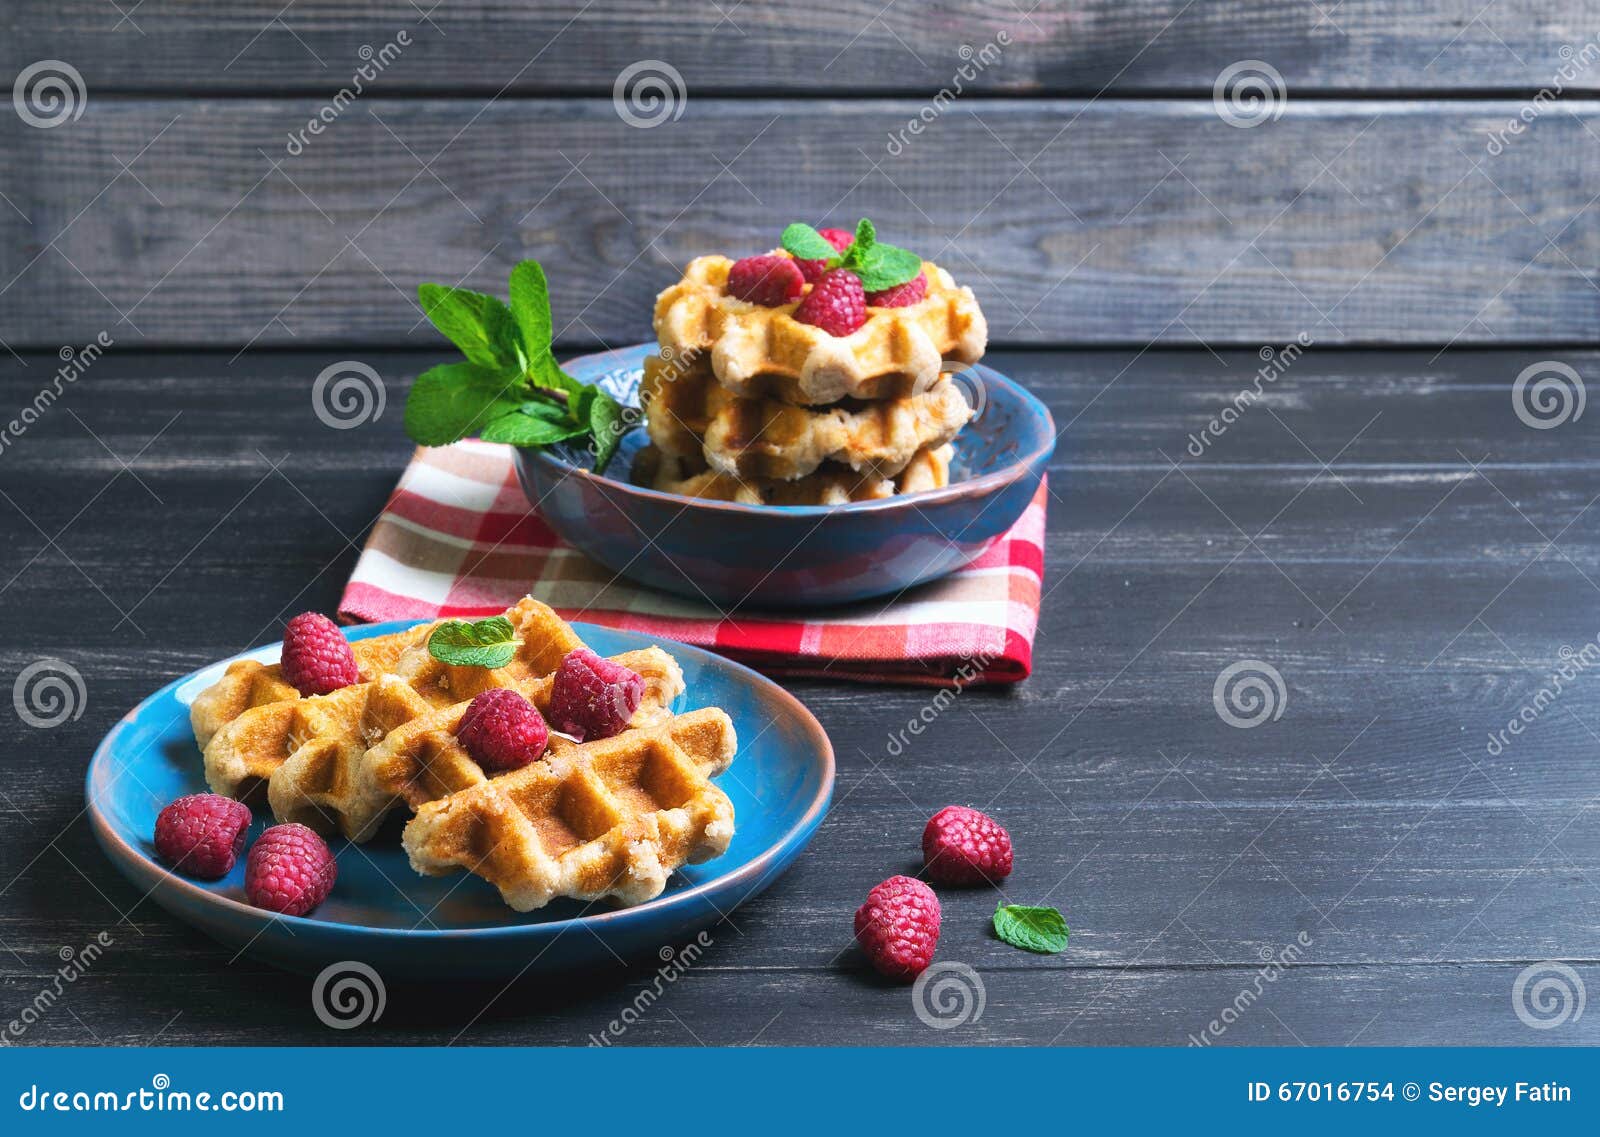 belgian lush round waffles with fresh raspberries